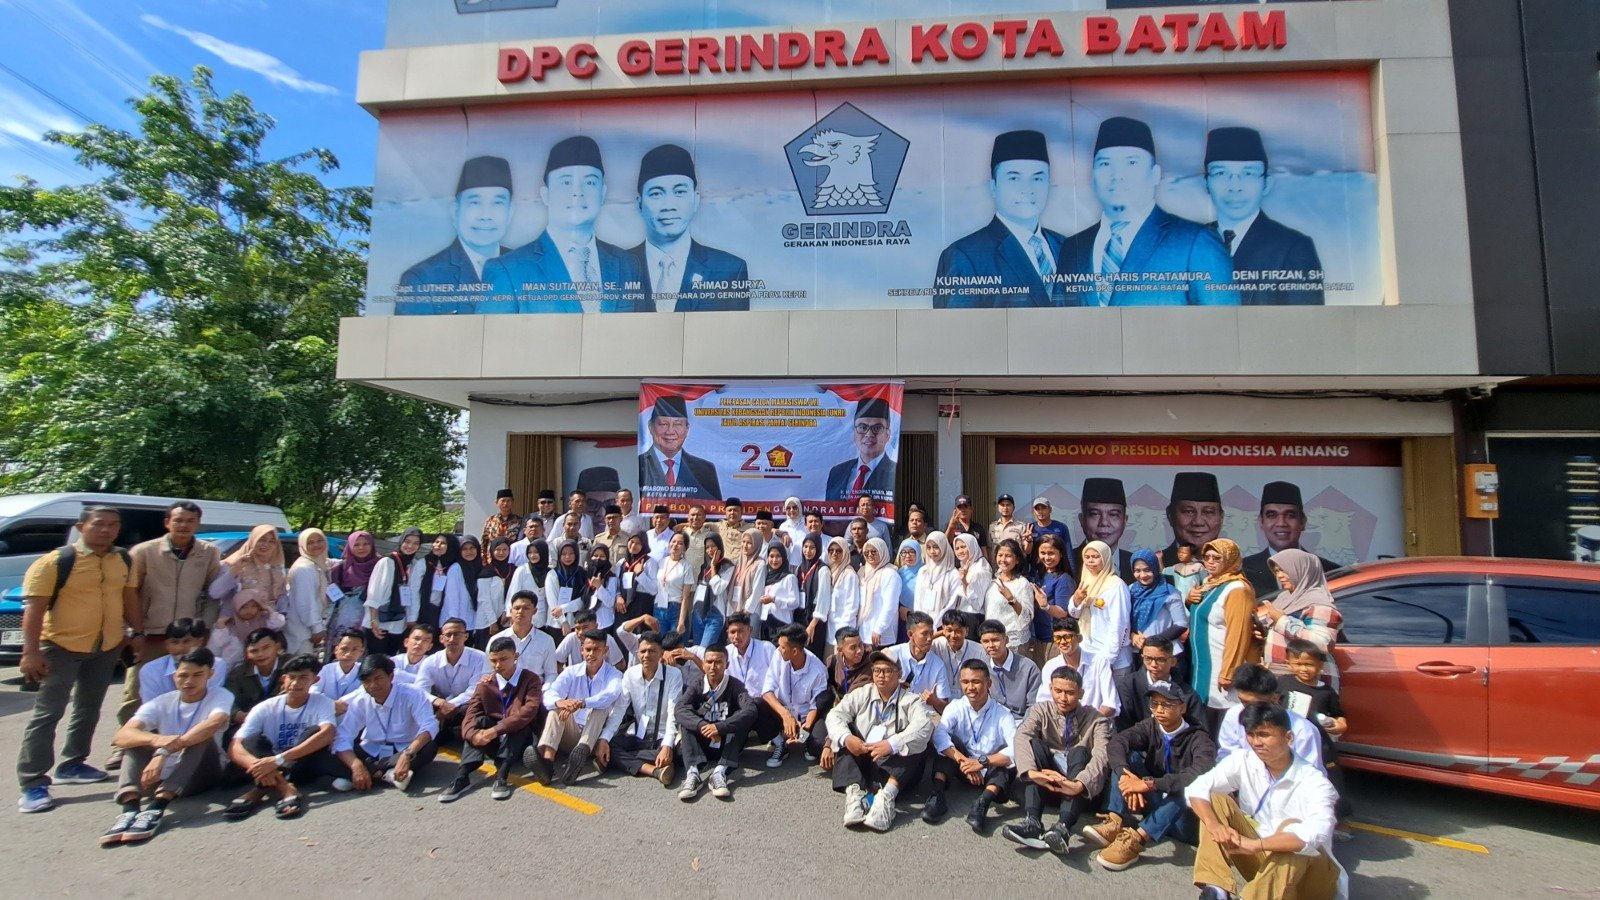 Upaya Endipat Wijaya majukan pendidikan di Kepri (Sinpo.id)